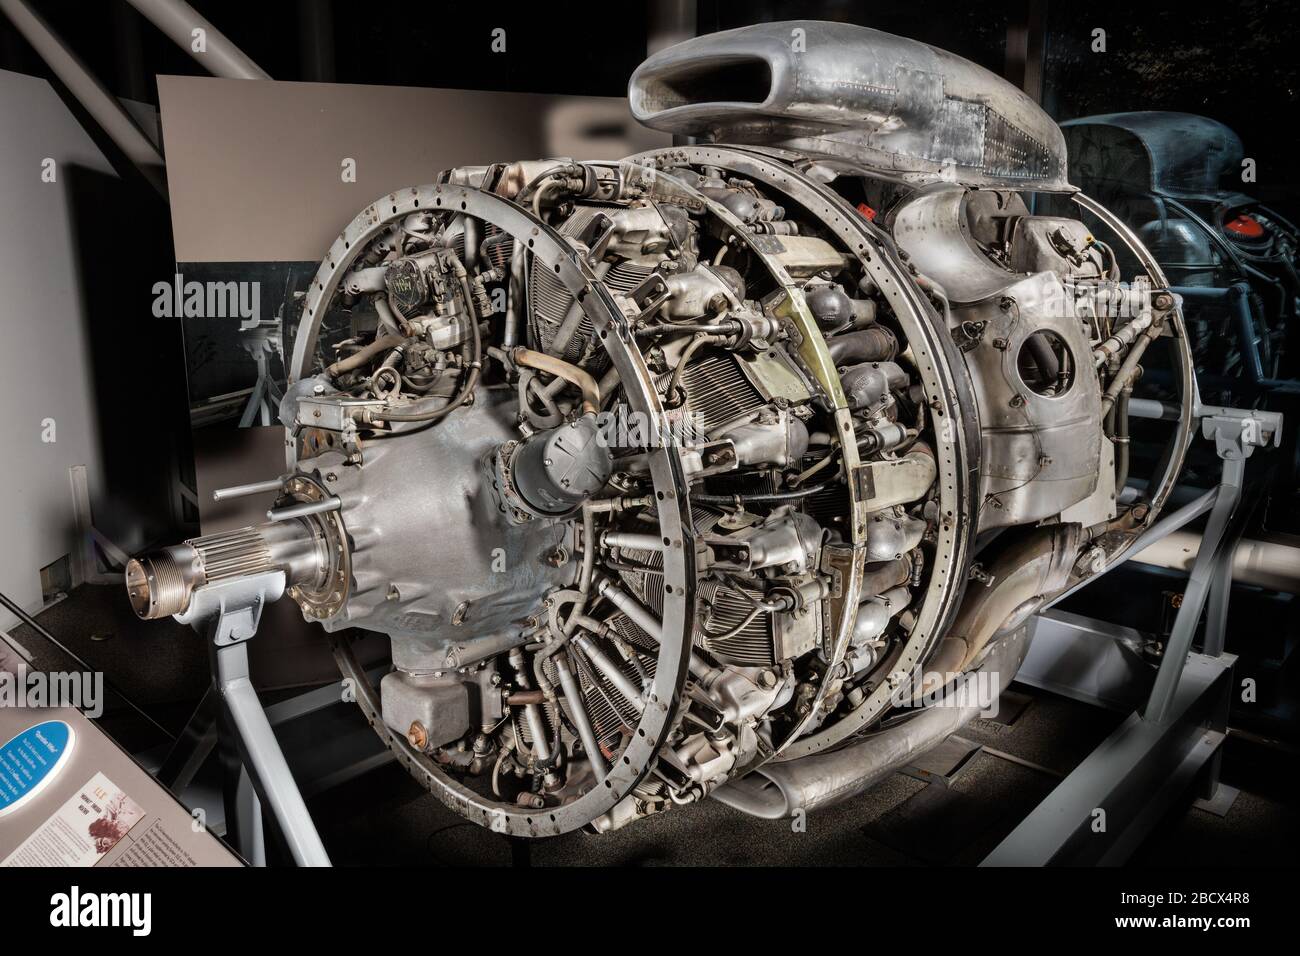 Wright TurboCyclone 18R3350TC 972TC18da2 2-reihiger Radialmotor. Typ:  Hubzylinder, 18 Zylinder, 2 Reihen, radial, Luftkühlung Nennleistung: 2.424  kW (3.250 ps) bei 2.900 rpmDisplacement: 54,9 l (3.350 cu in.)Bohrung und  Hub: 156 mm (6,1